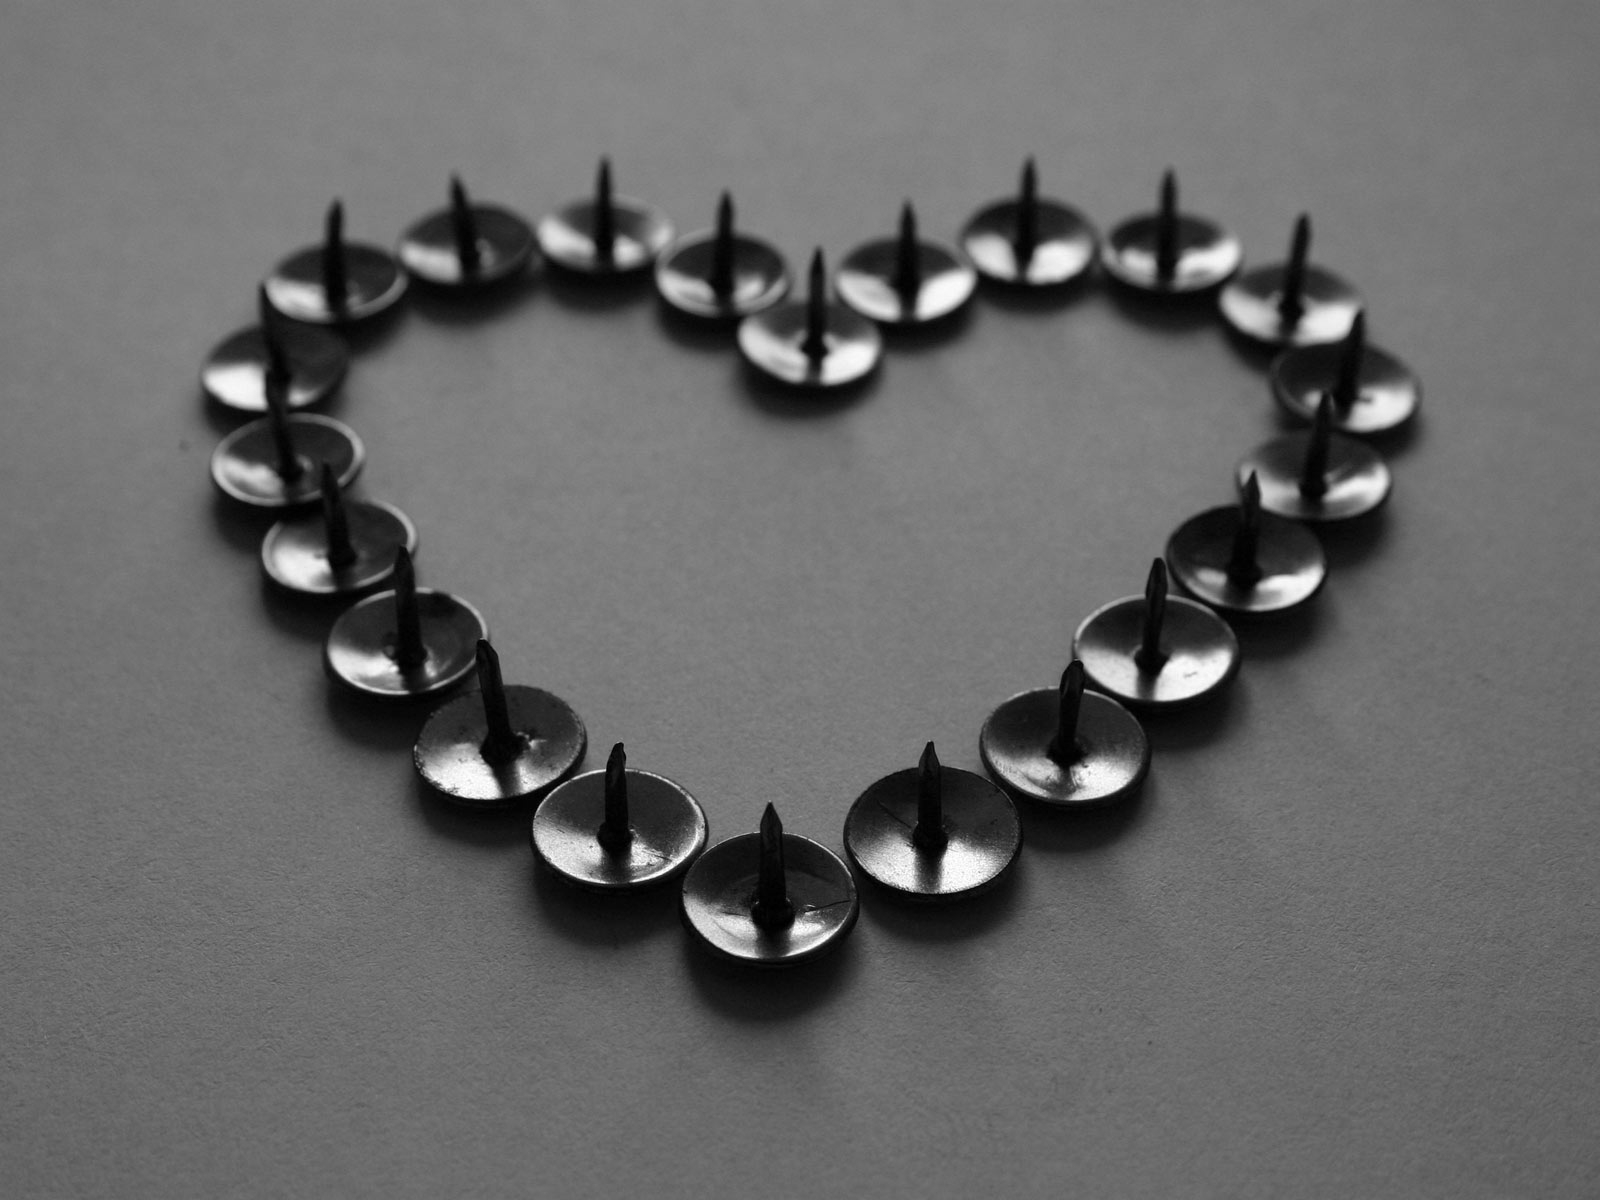 Thumbtacks shaped like a heart